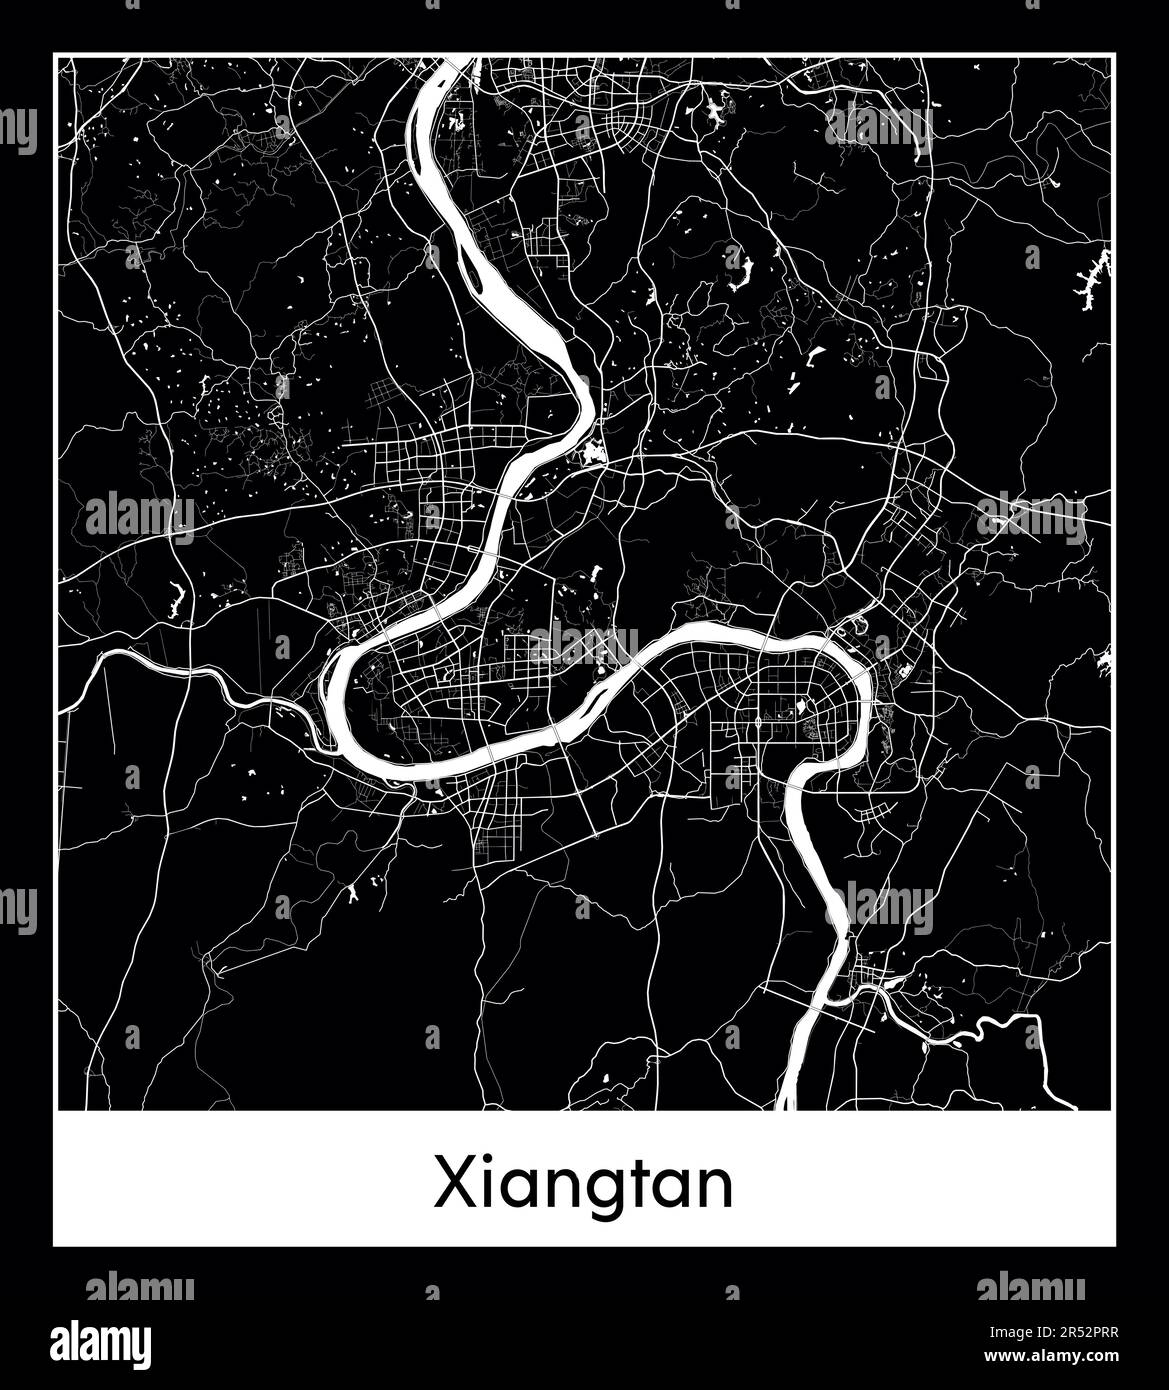 Minimal city map of Xiangtan (China AsiaMinimal city map of Xiangtan (China Asia)) Stock Vector